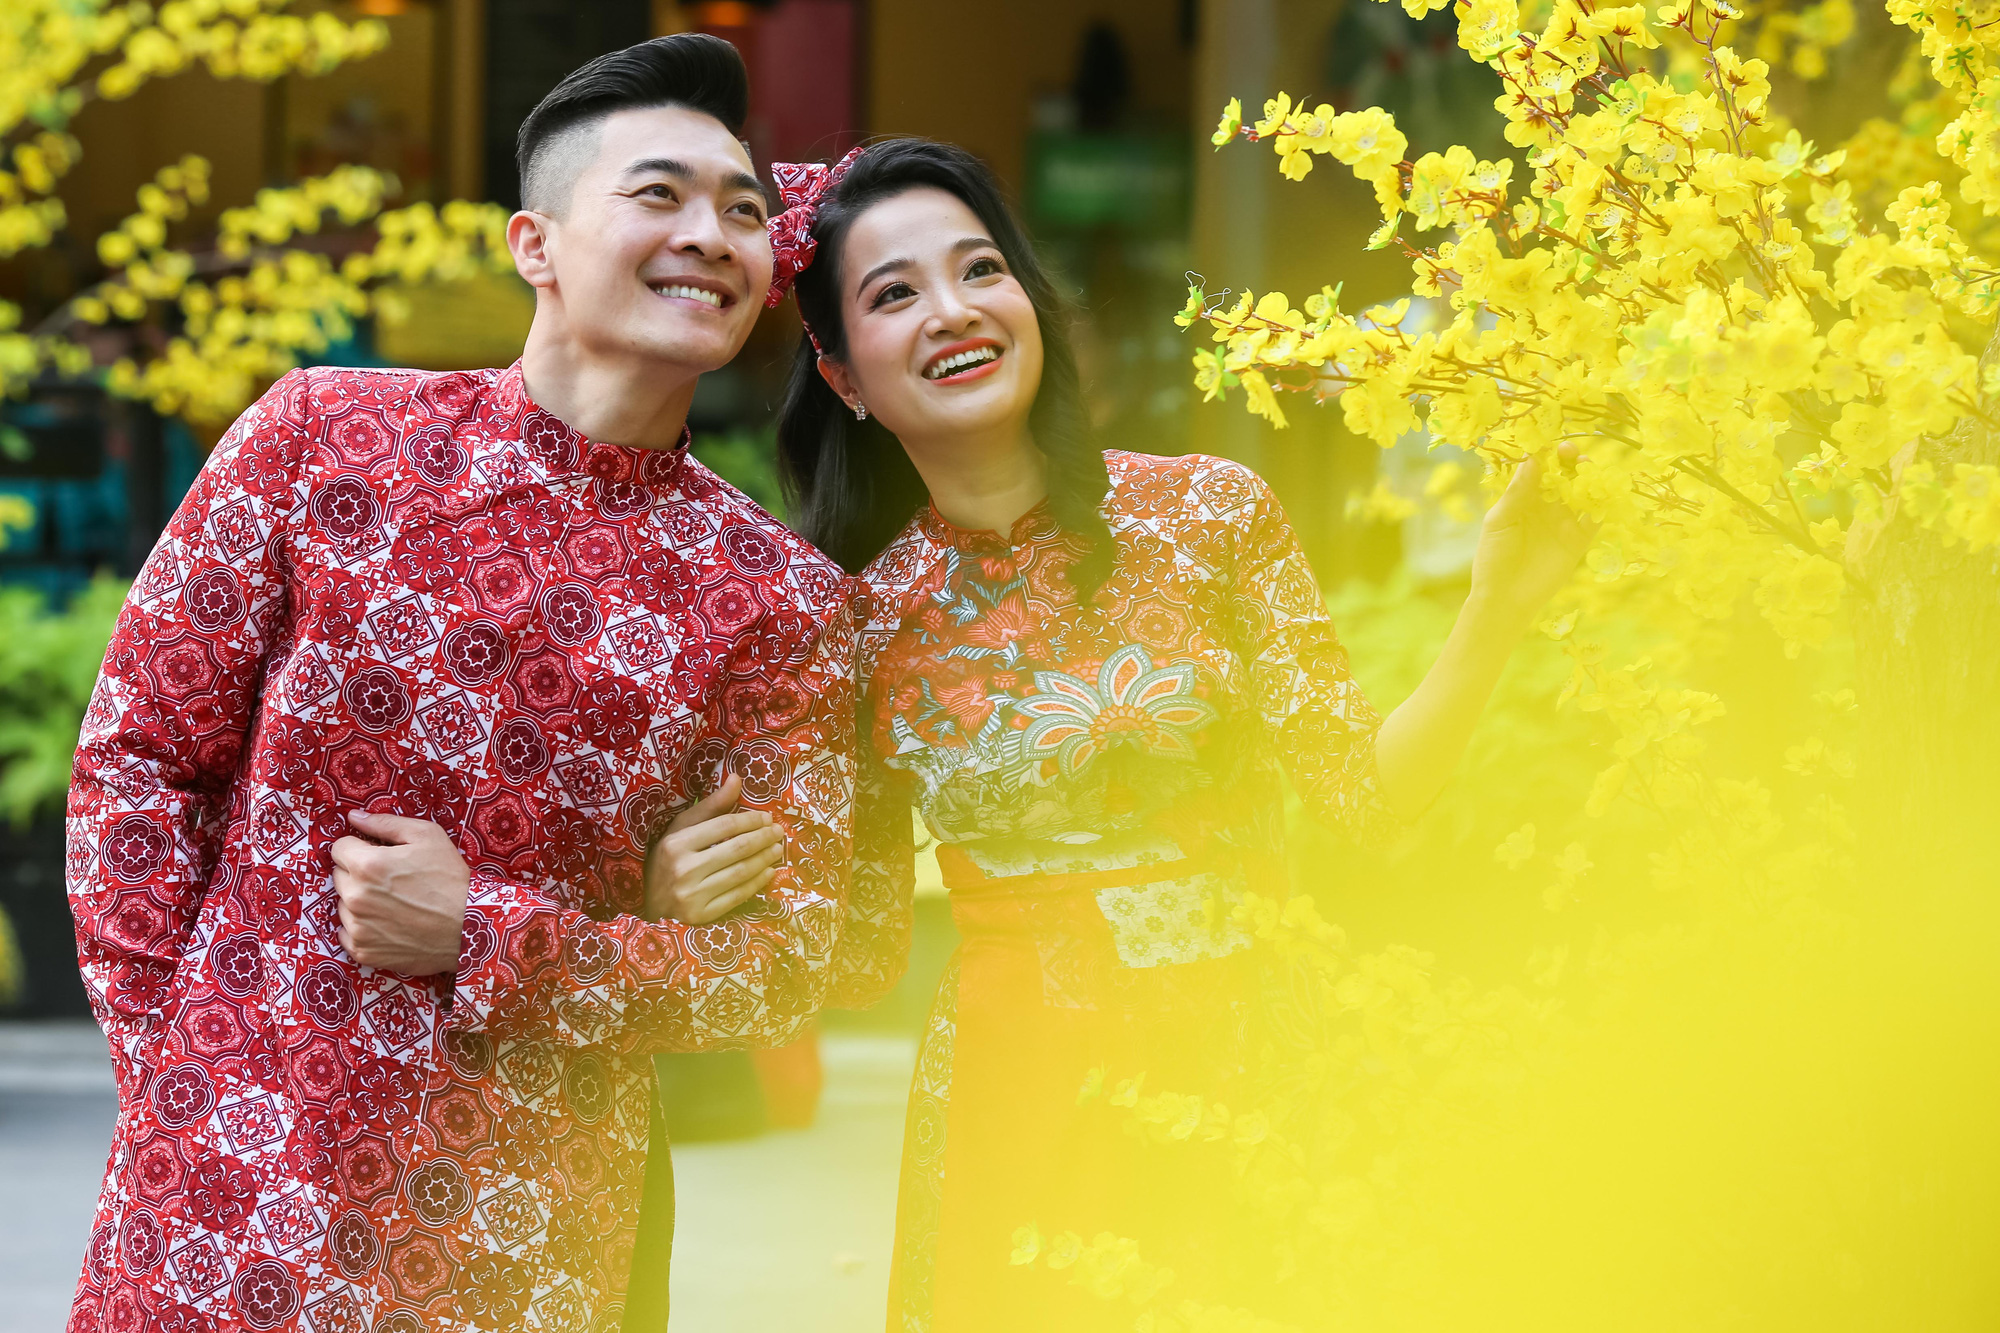 Áo dài truyền thống luôn là lựa chọn hoàn hảo để thể hiện văn hóa và tinh thần Tết Việt Nam. Hãy lướt ngay qua những bức ảnh áo dài xuống phố đầy tự tin và thanh lịch của chúng tôi để tìm kiếm ý tưởng cho bộ trang phục của mình nhé!